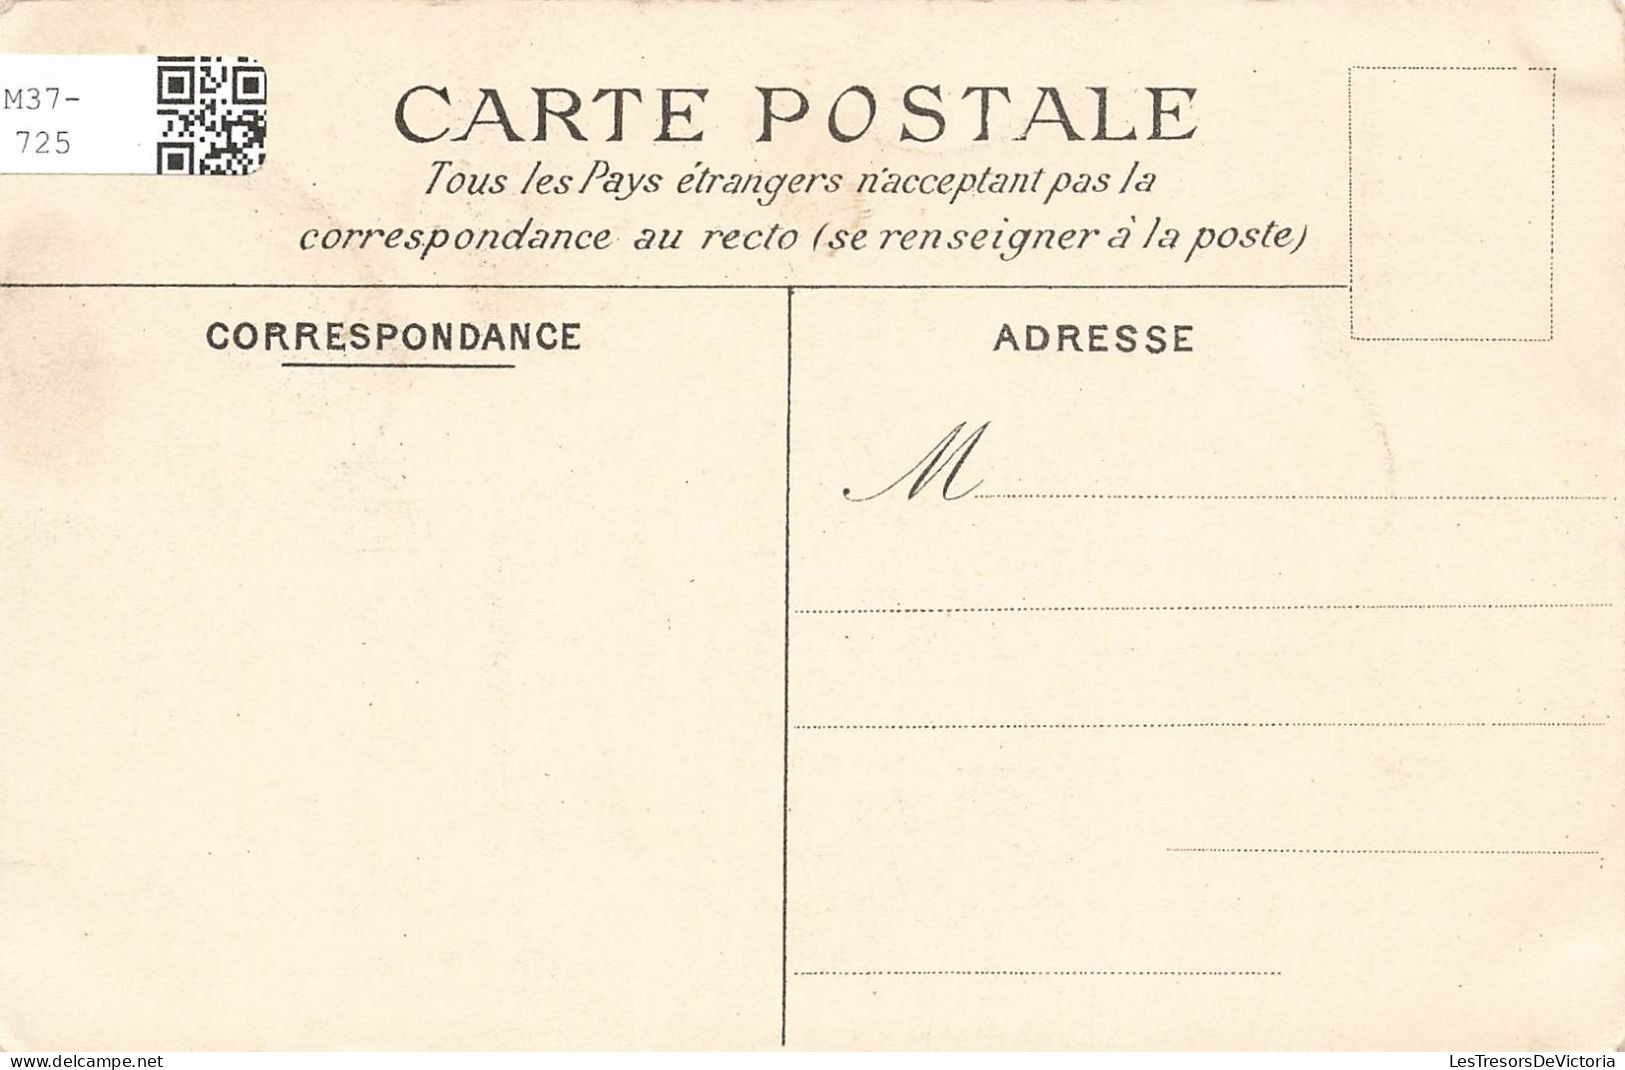 FRANCE - Saint Cloud - Incendie Du Château - Le 13 Octobre 1870 - Carte Postale Ancienne - Saint Cloud